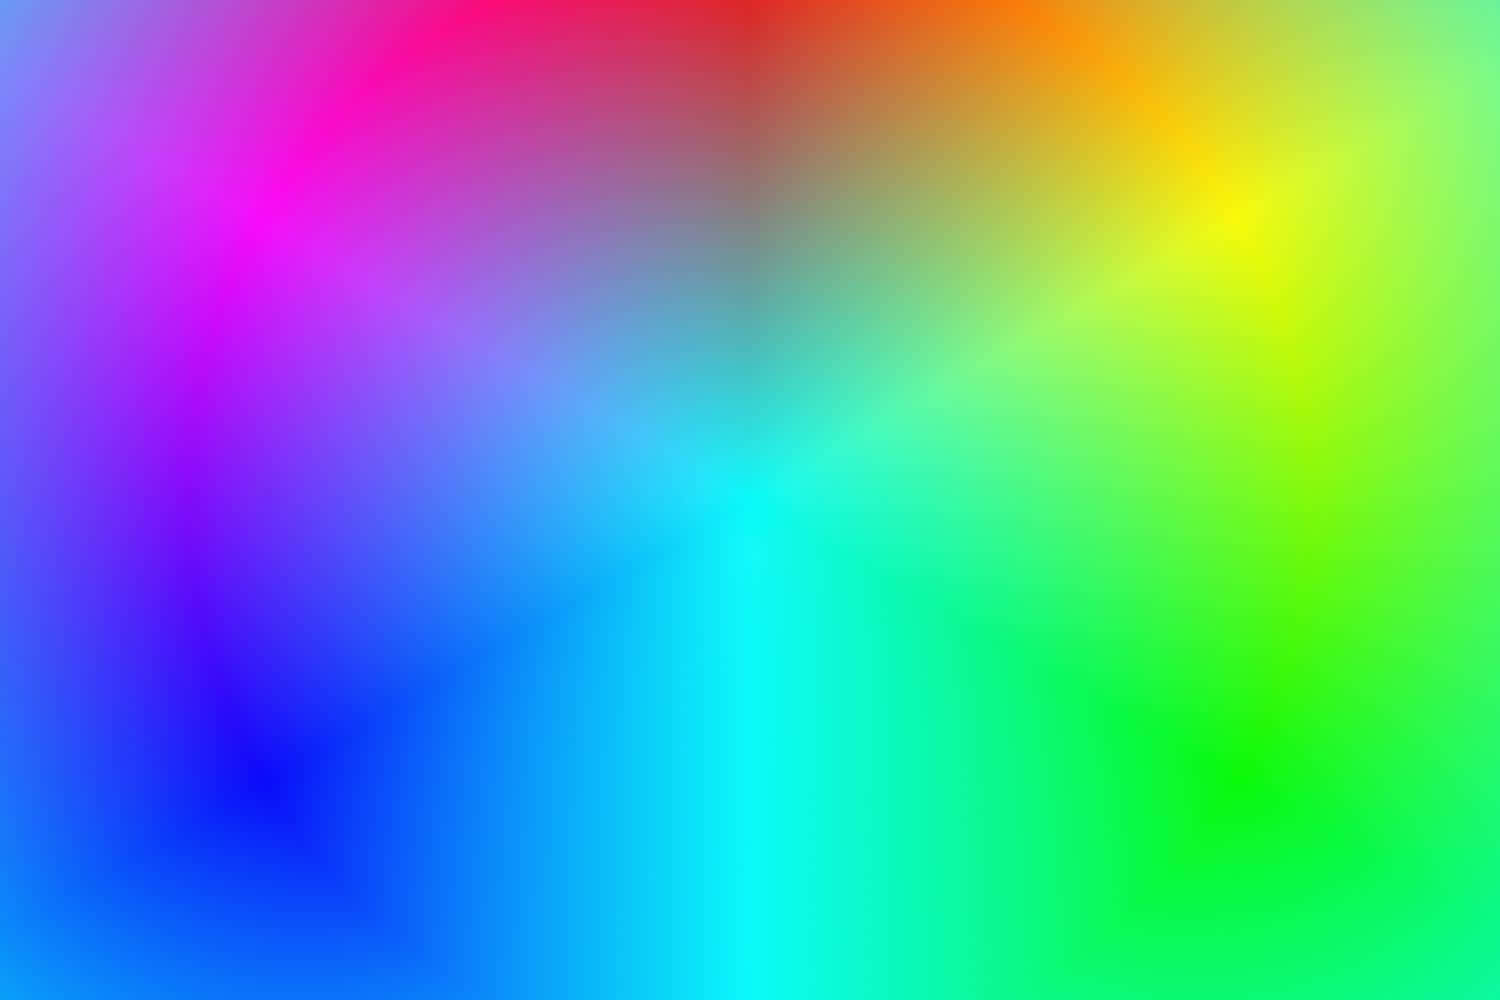 Einhintergrund In Regenbogenfarben Mit Einem Regenbogenfarbenen Kreis